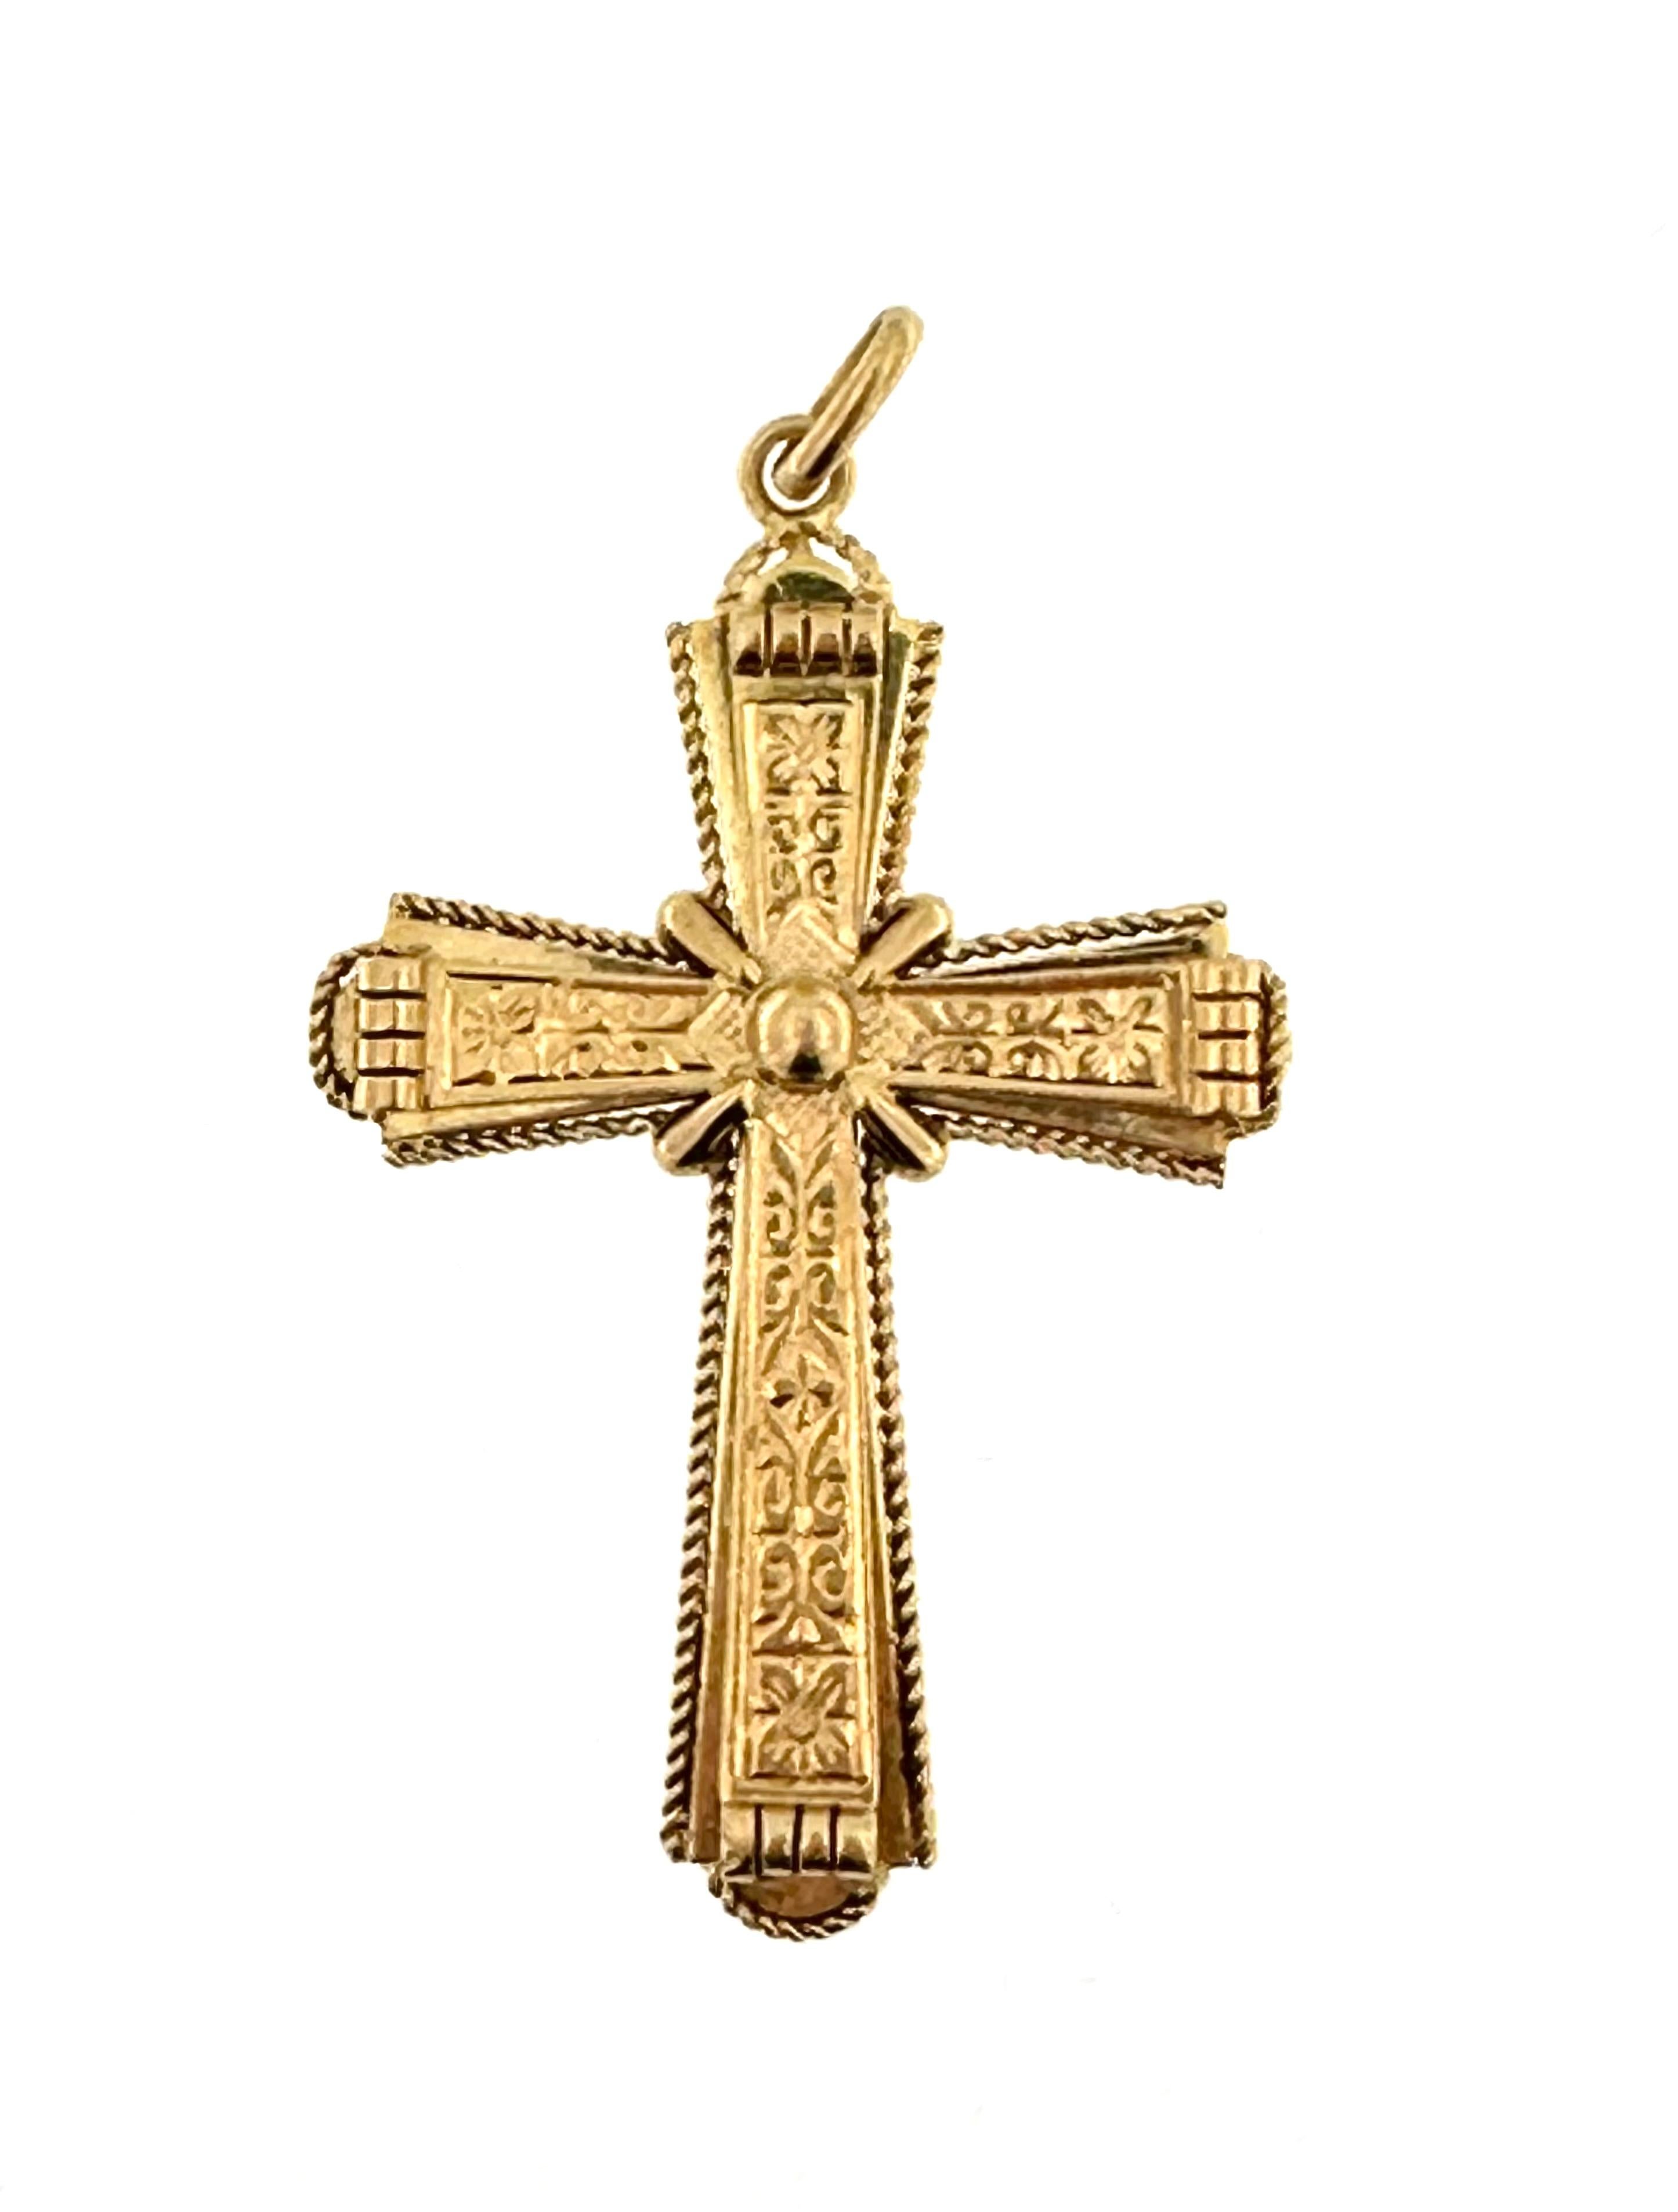 Dieses antike italienische Kreuz beeindruckt durch die Präzision und die Detailgenauigkeit der Verzierung. Dieses schöne und elegante italienische Vintage-Kreuz ist handgefertigt und mit Blumenmotiven versehen. Das Kreuz aus 18-karätigem Gelbgold